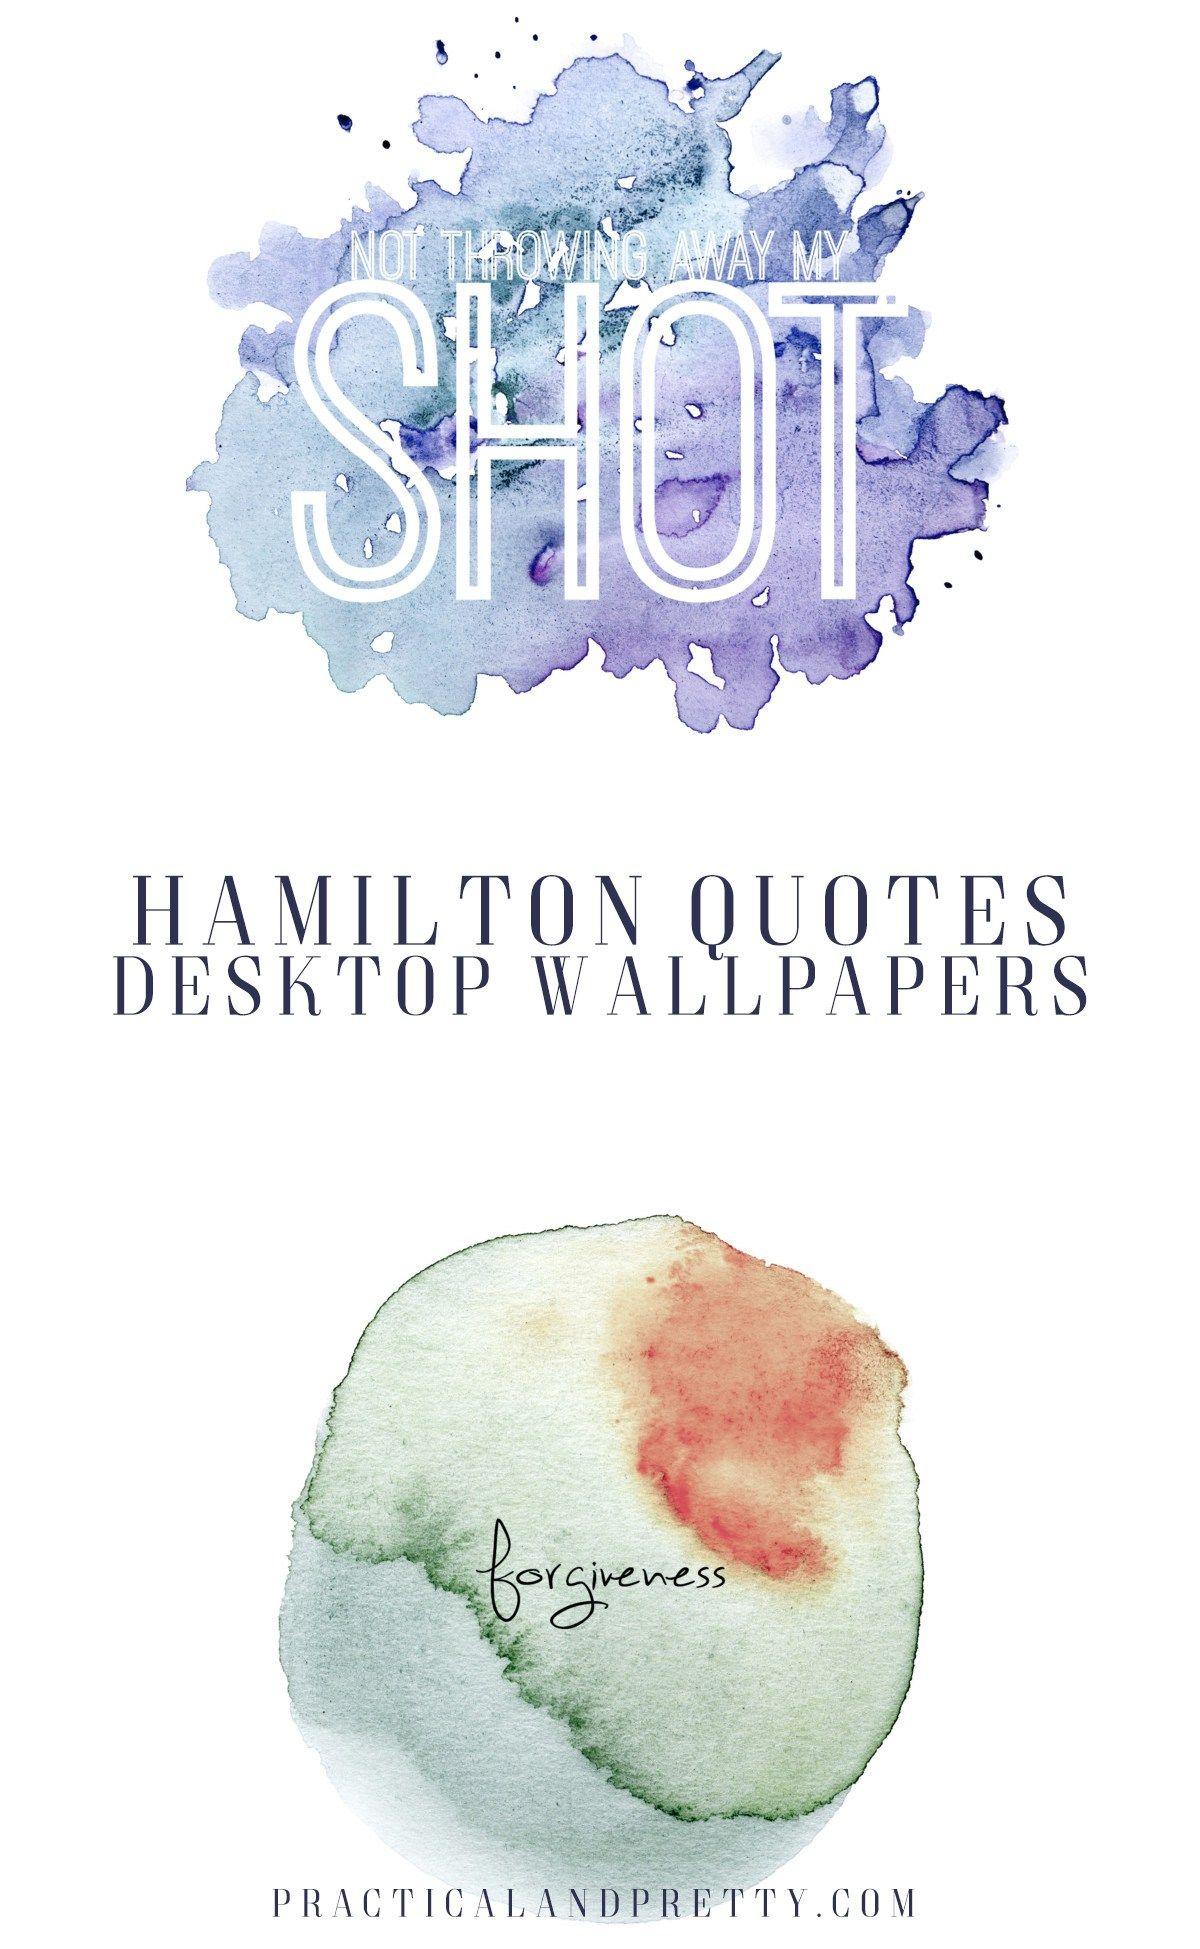 Hamilton Quote Wallpaper for Your Desktop and Pretty